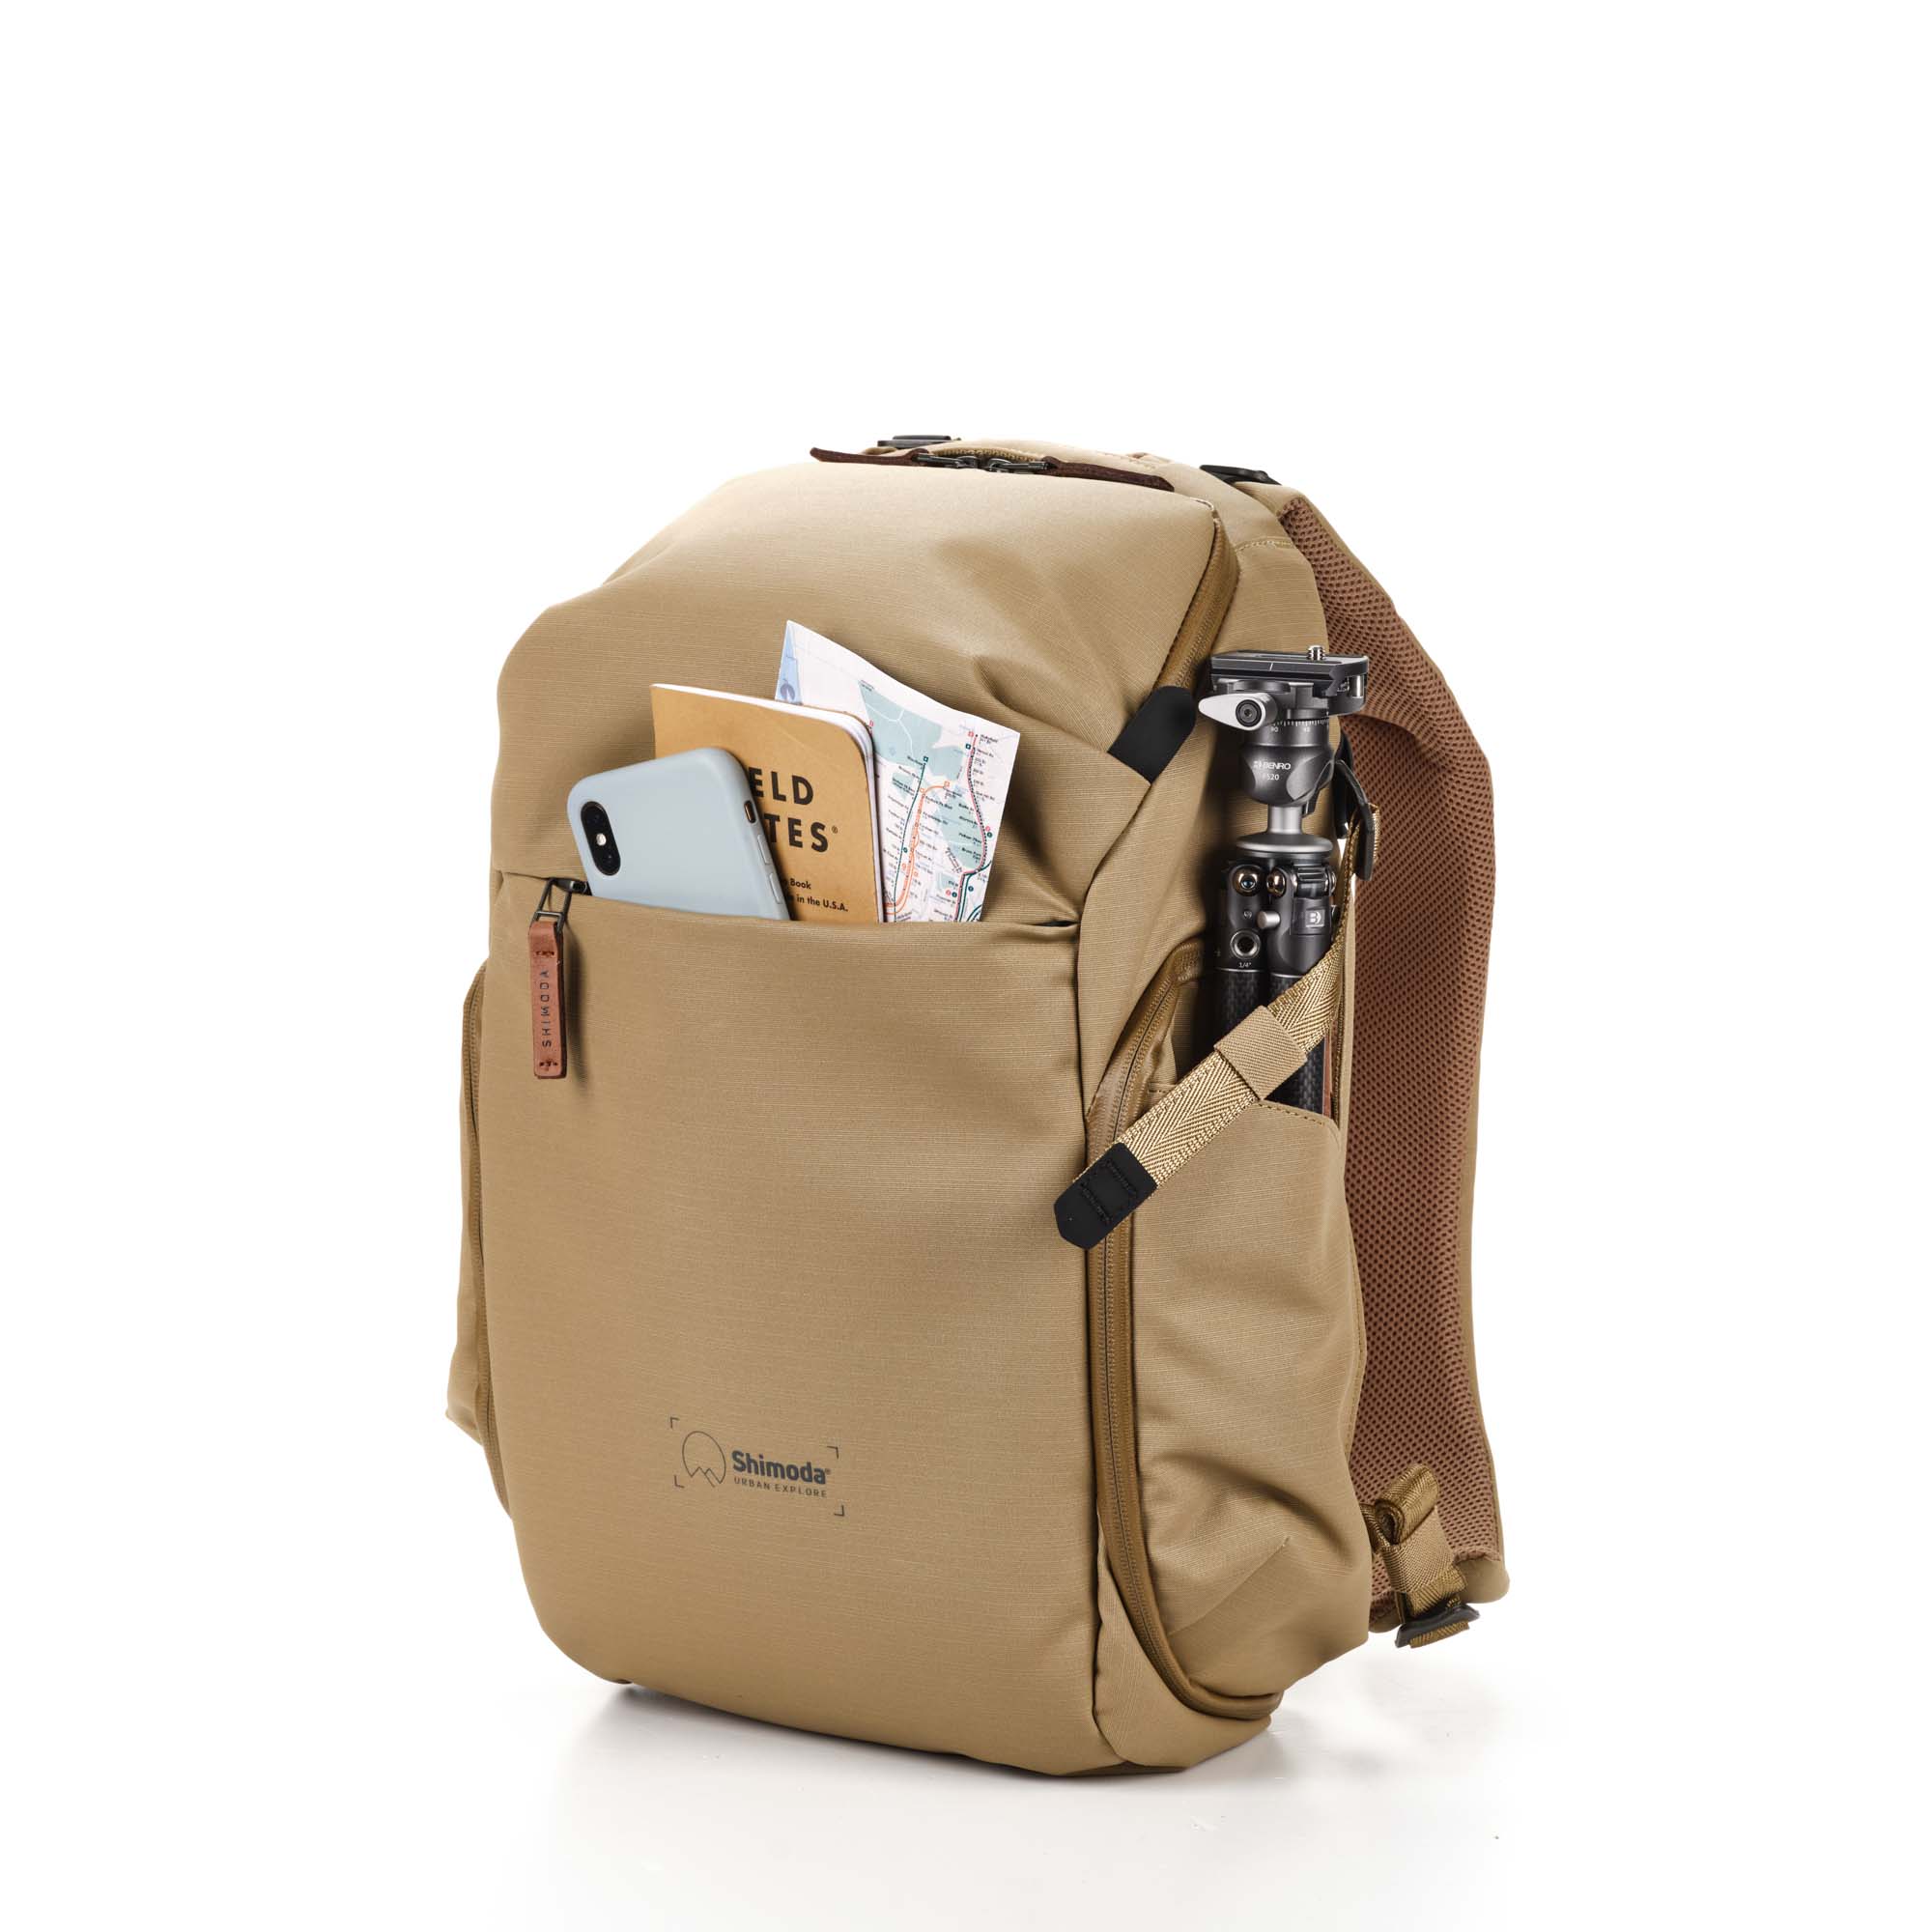 Shimoda Designs Explore 20 Rucksack in Beige, Frontal links mit Smartphone, Field Notes und Karte in Fronttasche und Stativ in der Seitentasche